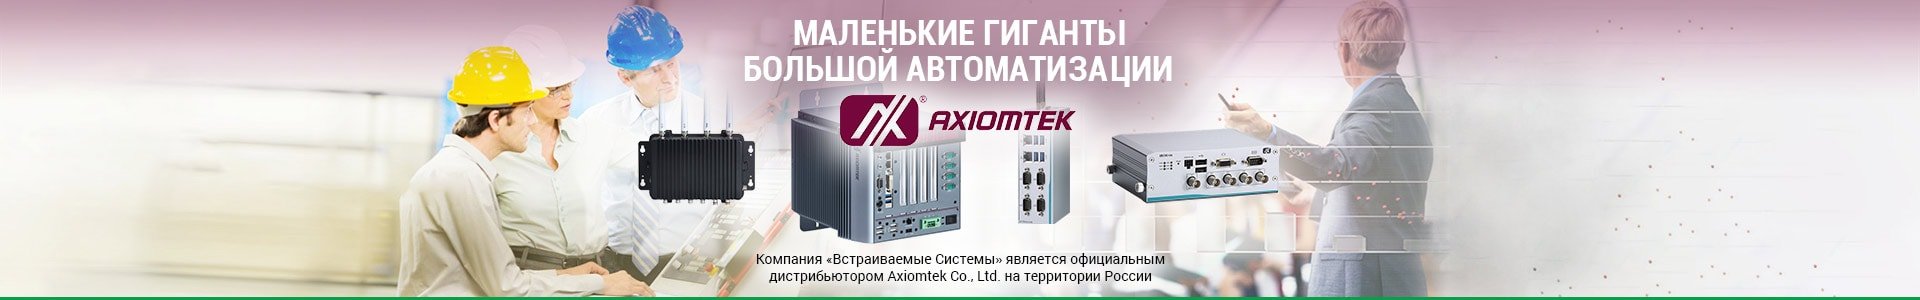 Компактные компьютеры Axiomtek